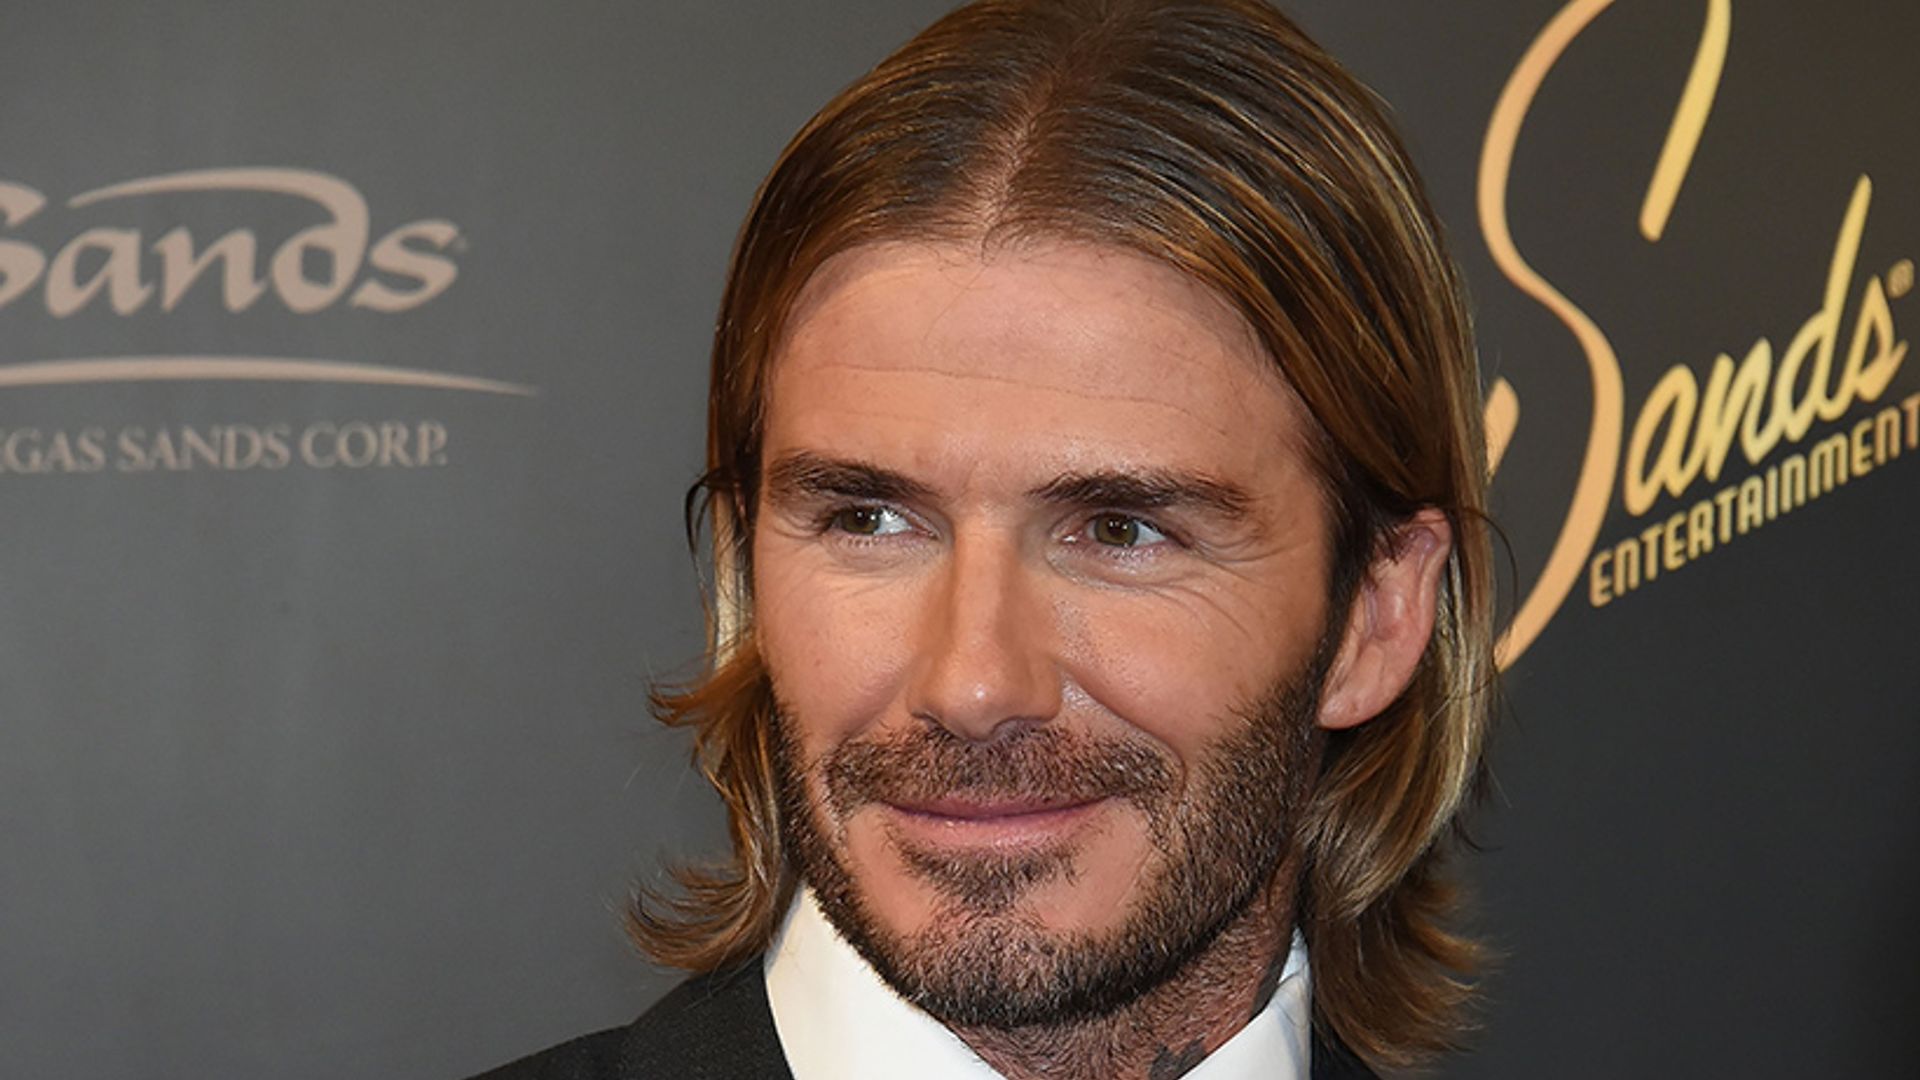 David Beckham reveals new shorter haircut | HELLO!